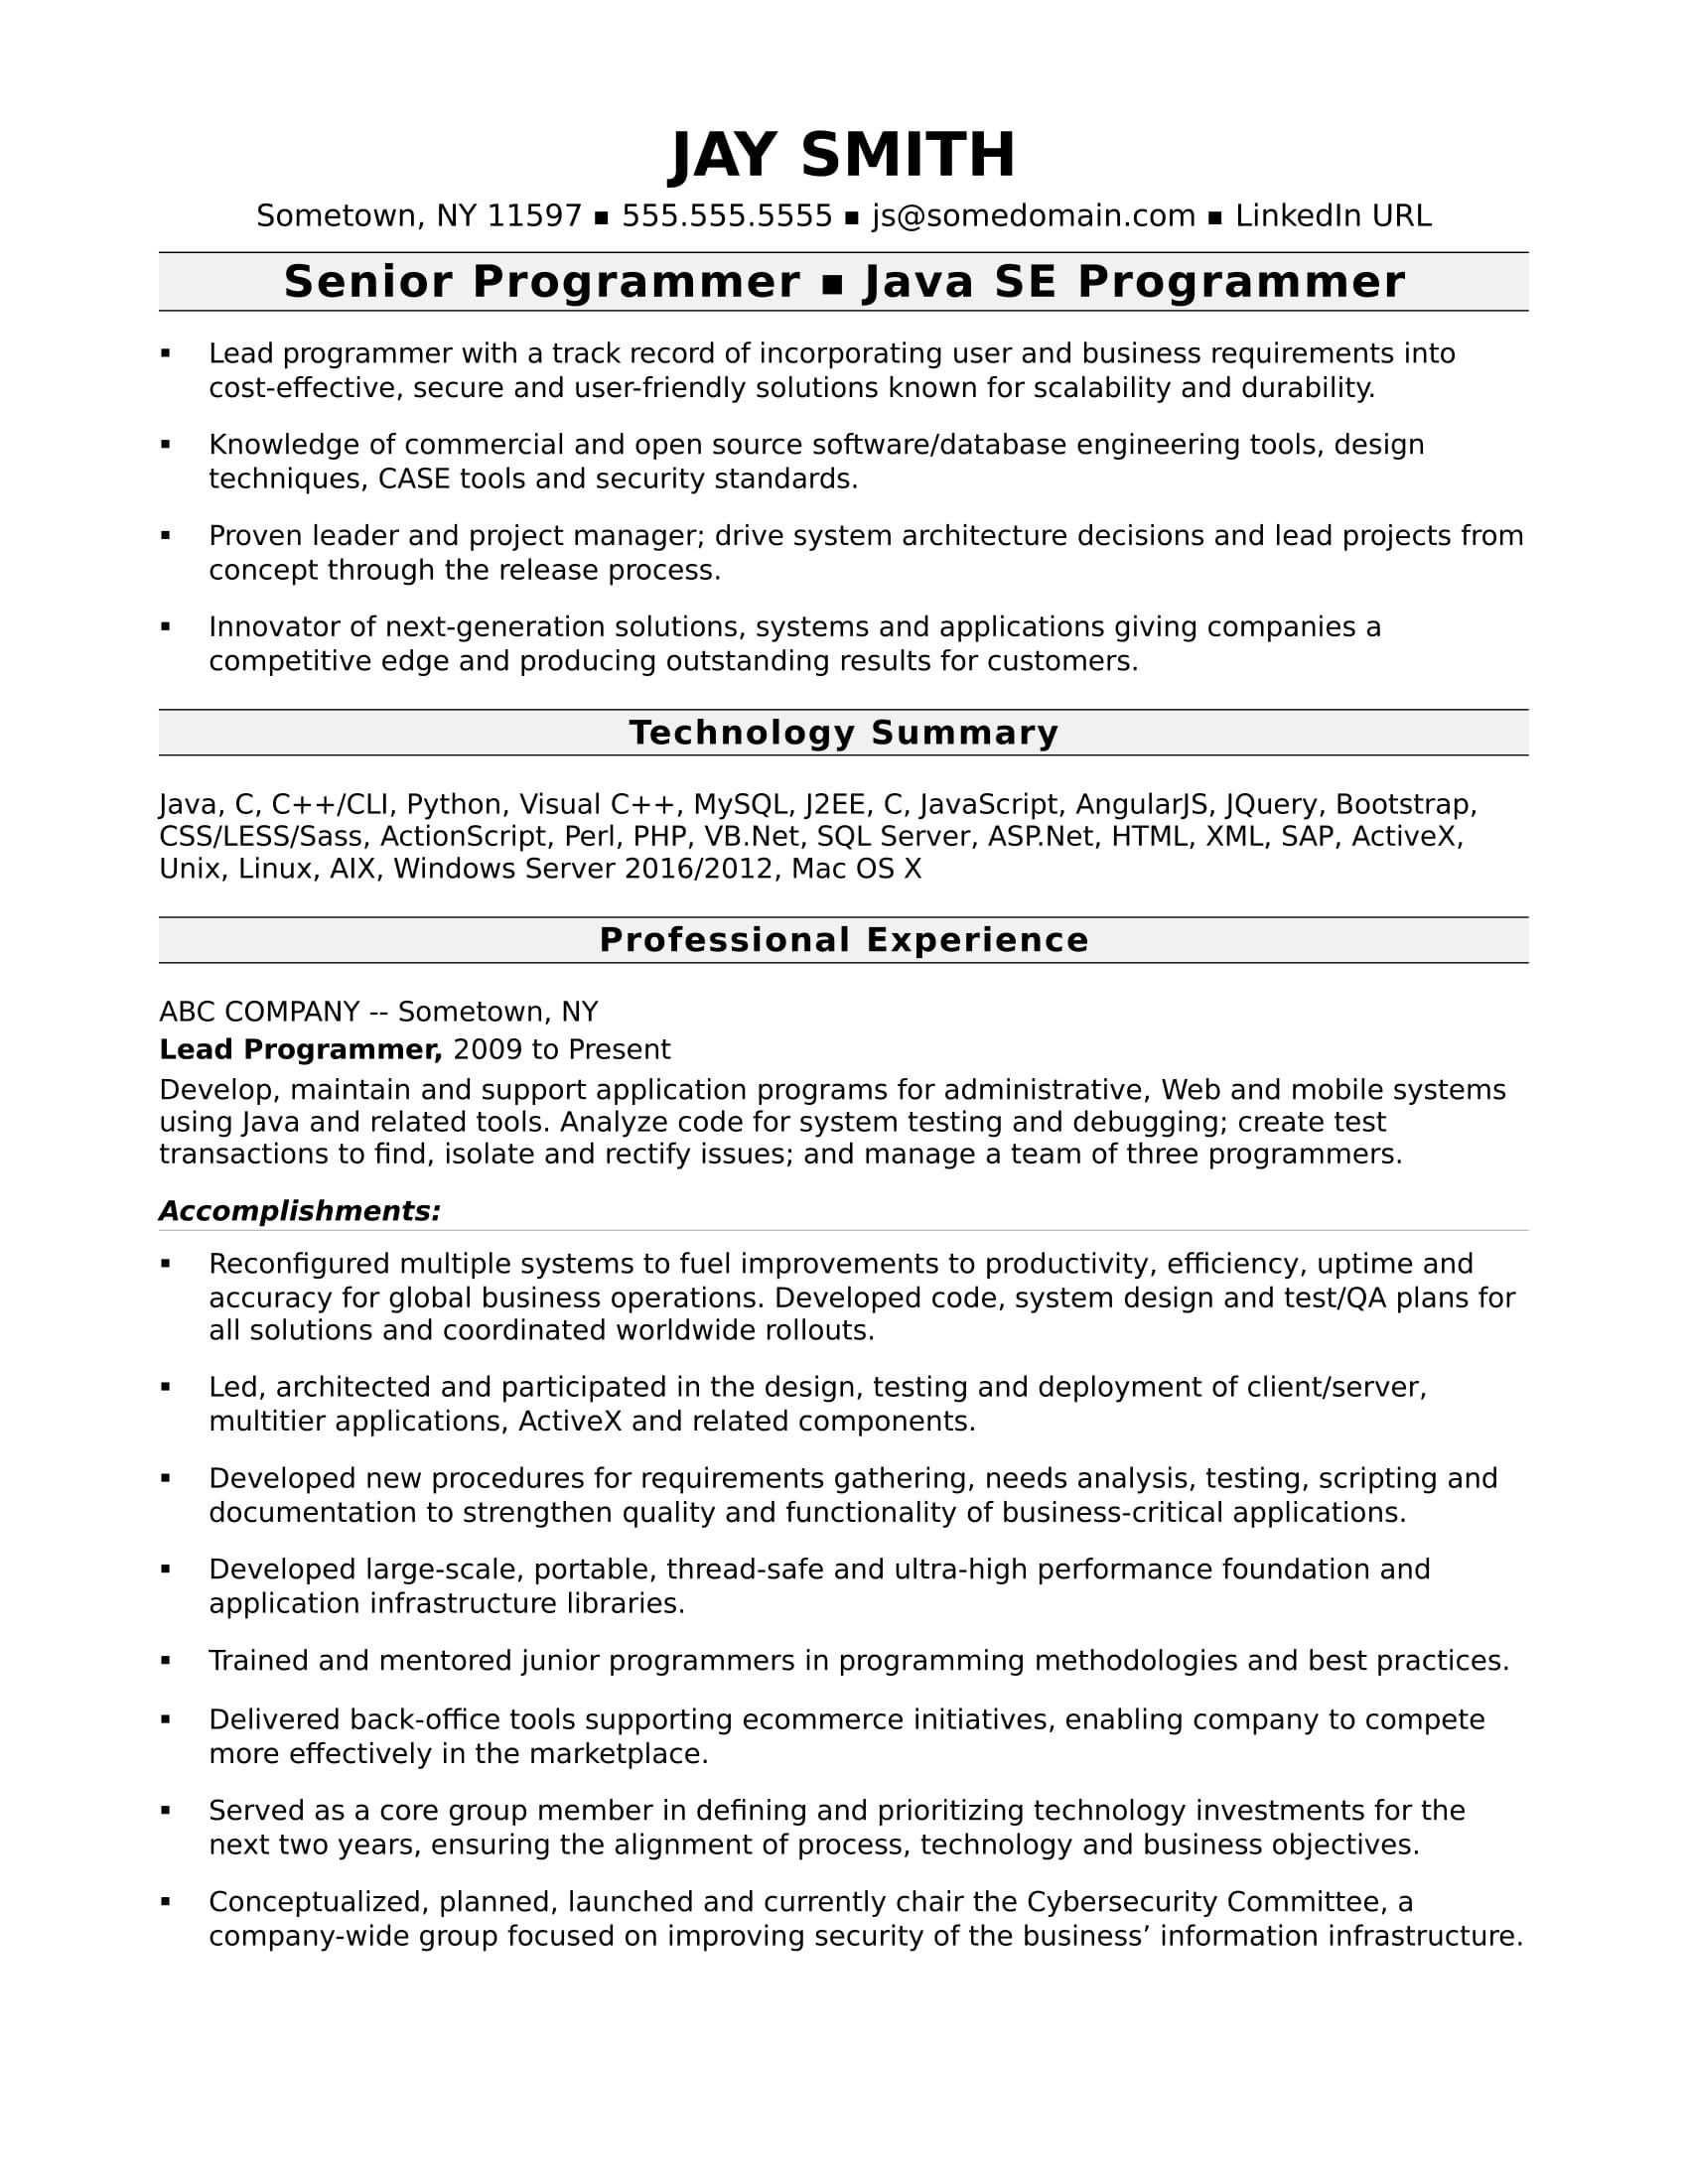 Free Sample Resume for Computer Programmer Programmer Resume Template Monster.com